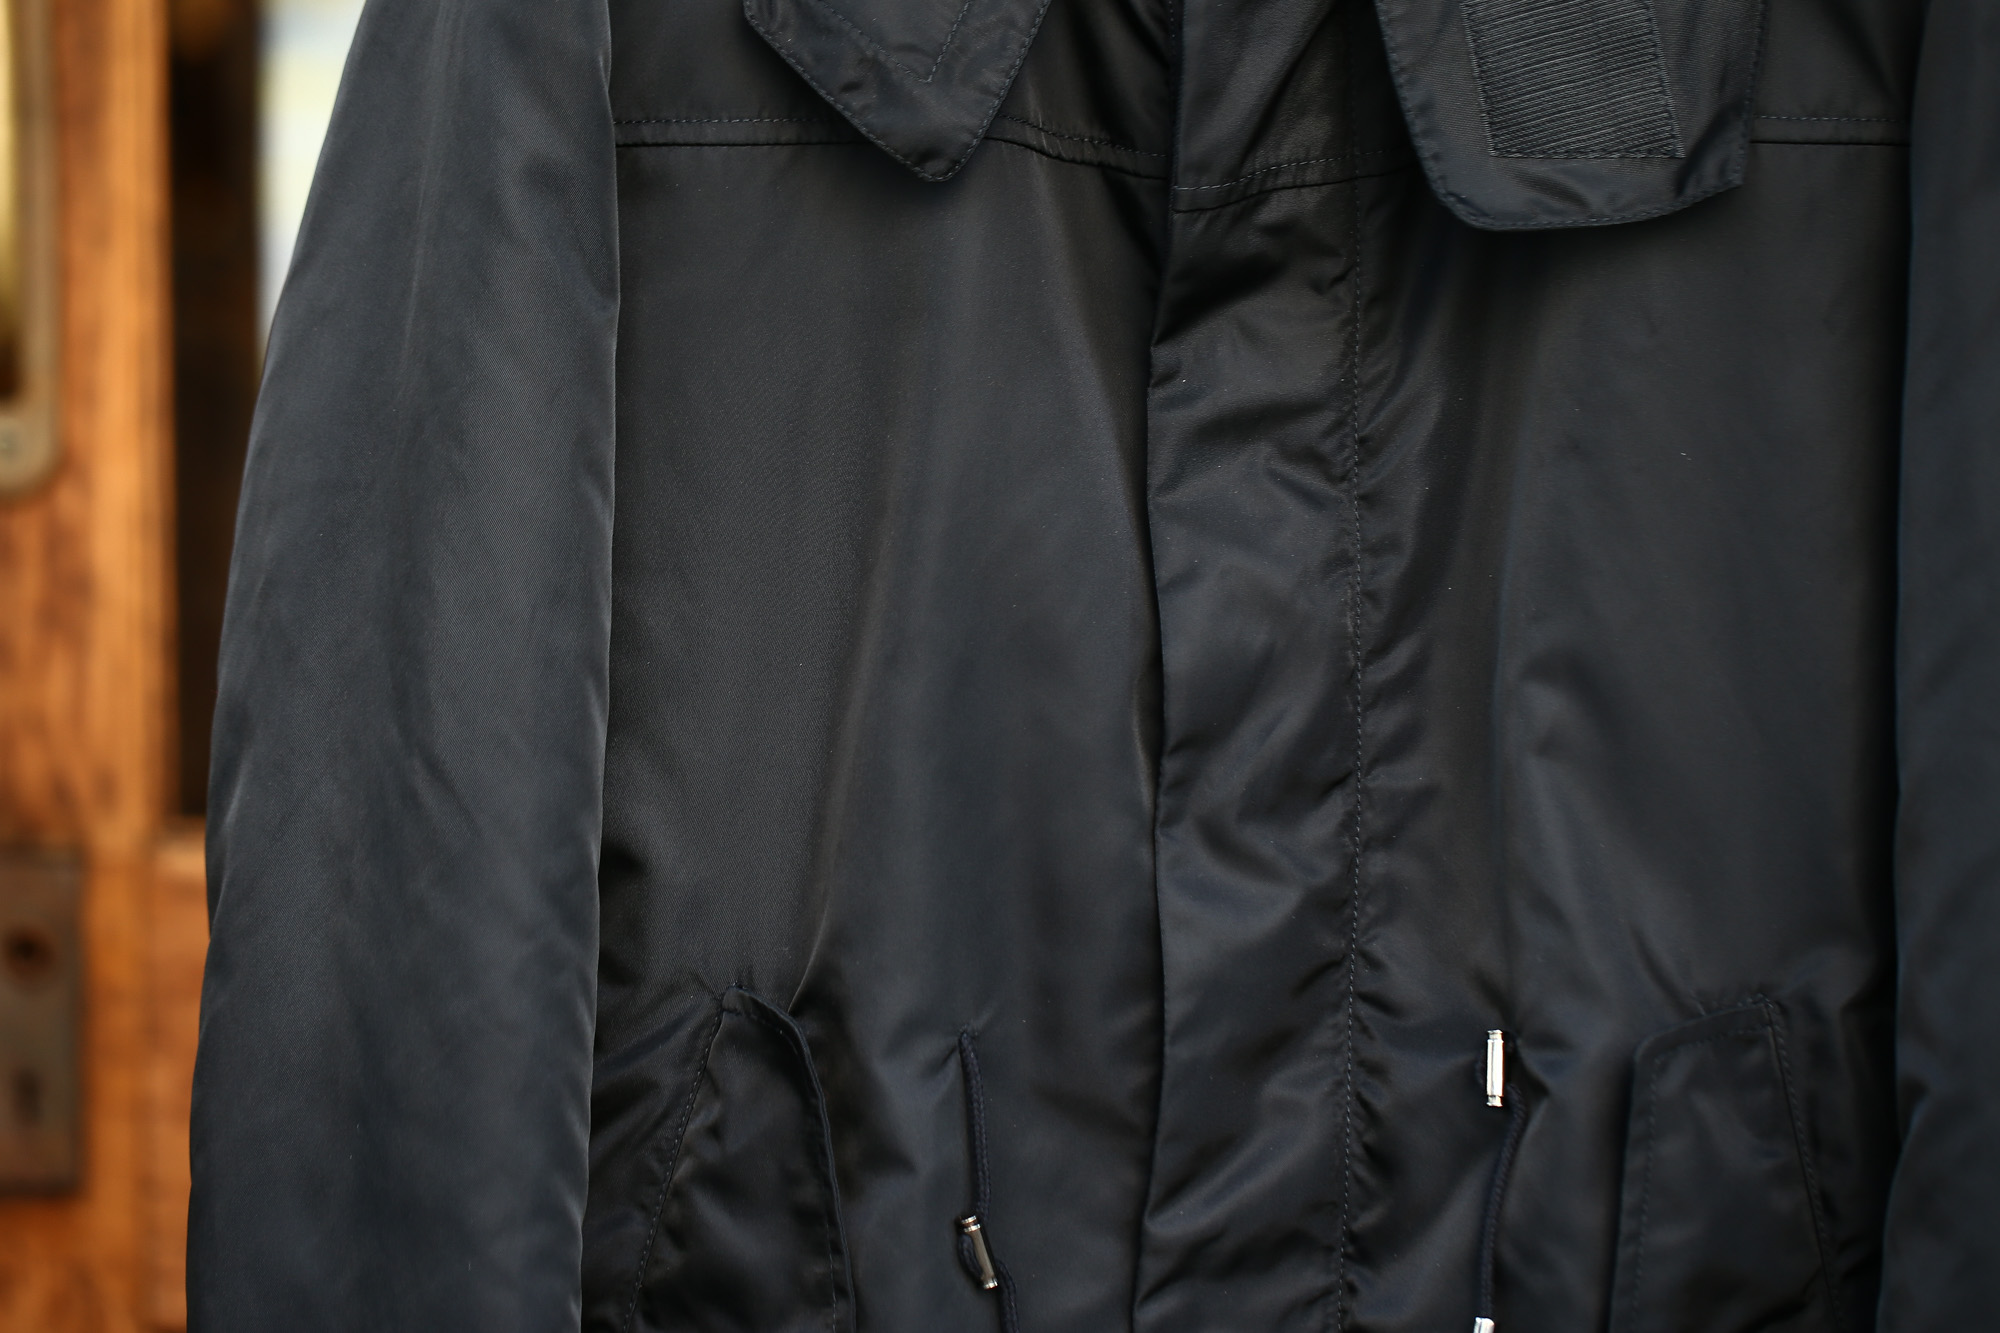 Sealup (シーラップ) M51 Mods coat (M51 モッズコート) サーモアライニング ダウンライナー付き モッズコート BLACK (ブラック・36) Made in italy (イタリア製) 2017 秋冬新作 sealup シーラップ 愛知 名古屋 Alto e Diritto アルト エ デリット